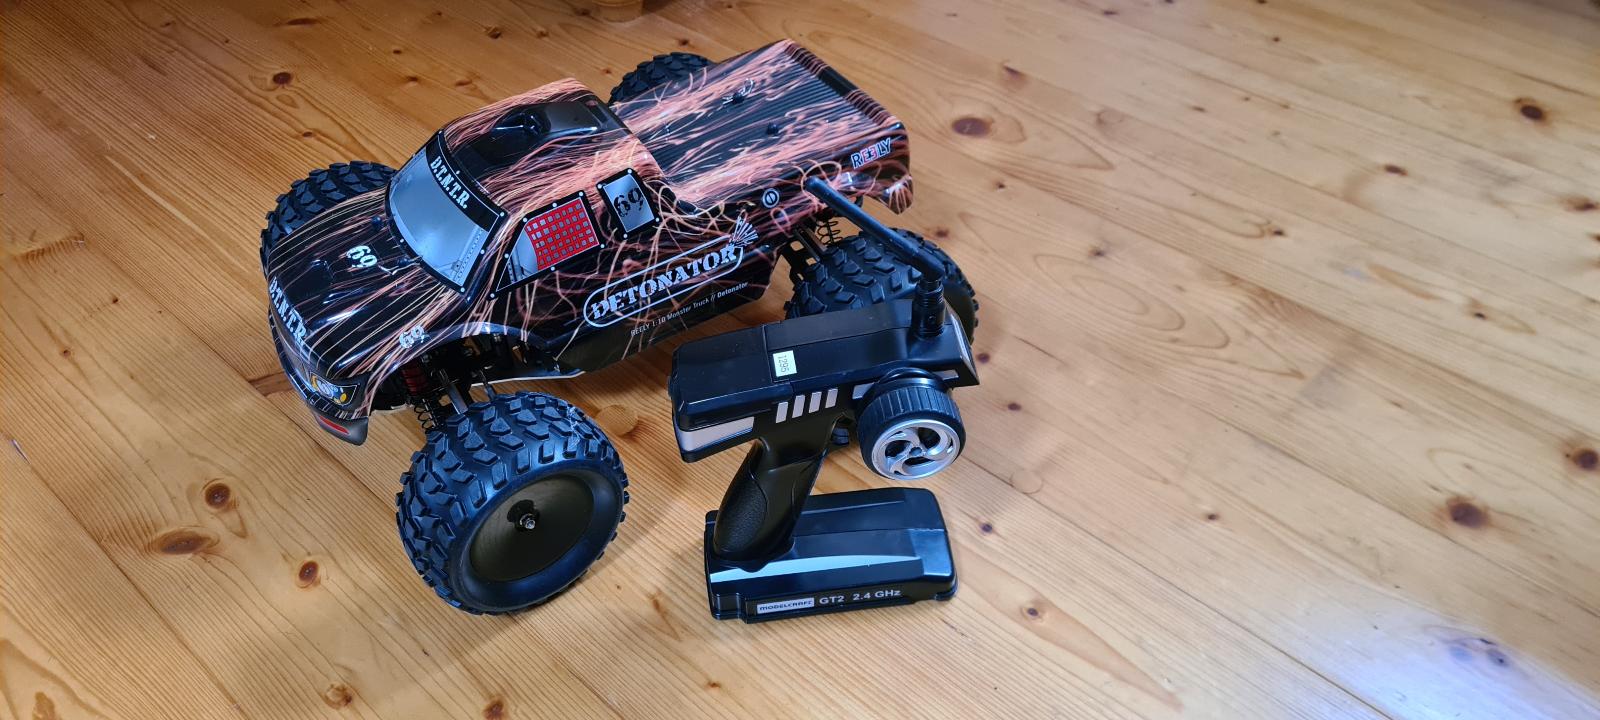 Rc model auta monster truck Detonator 1:10 - Modelárstvo